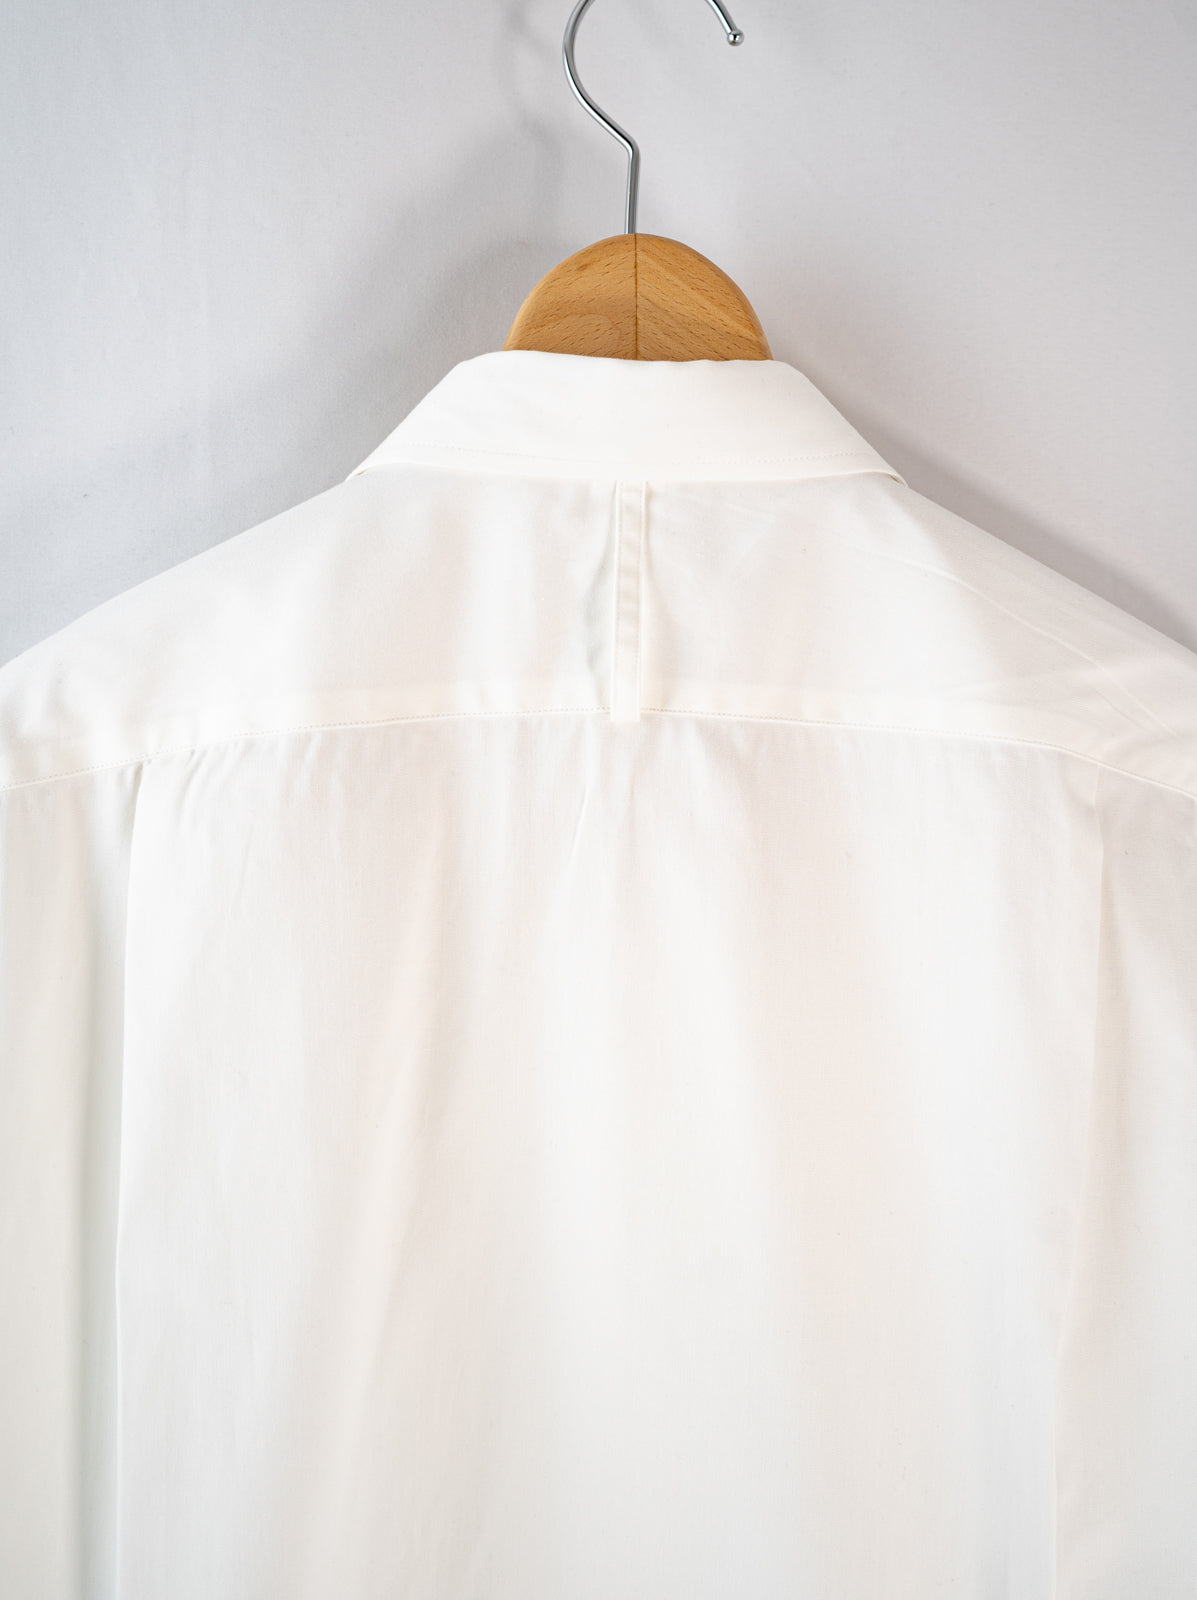 衿付きチャイナボタンシャツ(オックス) | Jipijapa majun plus